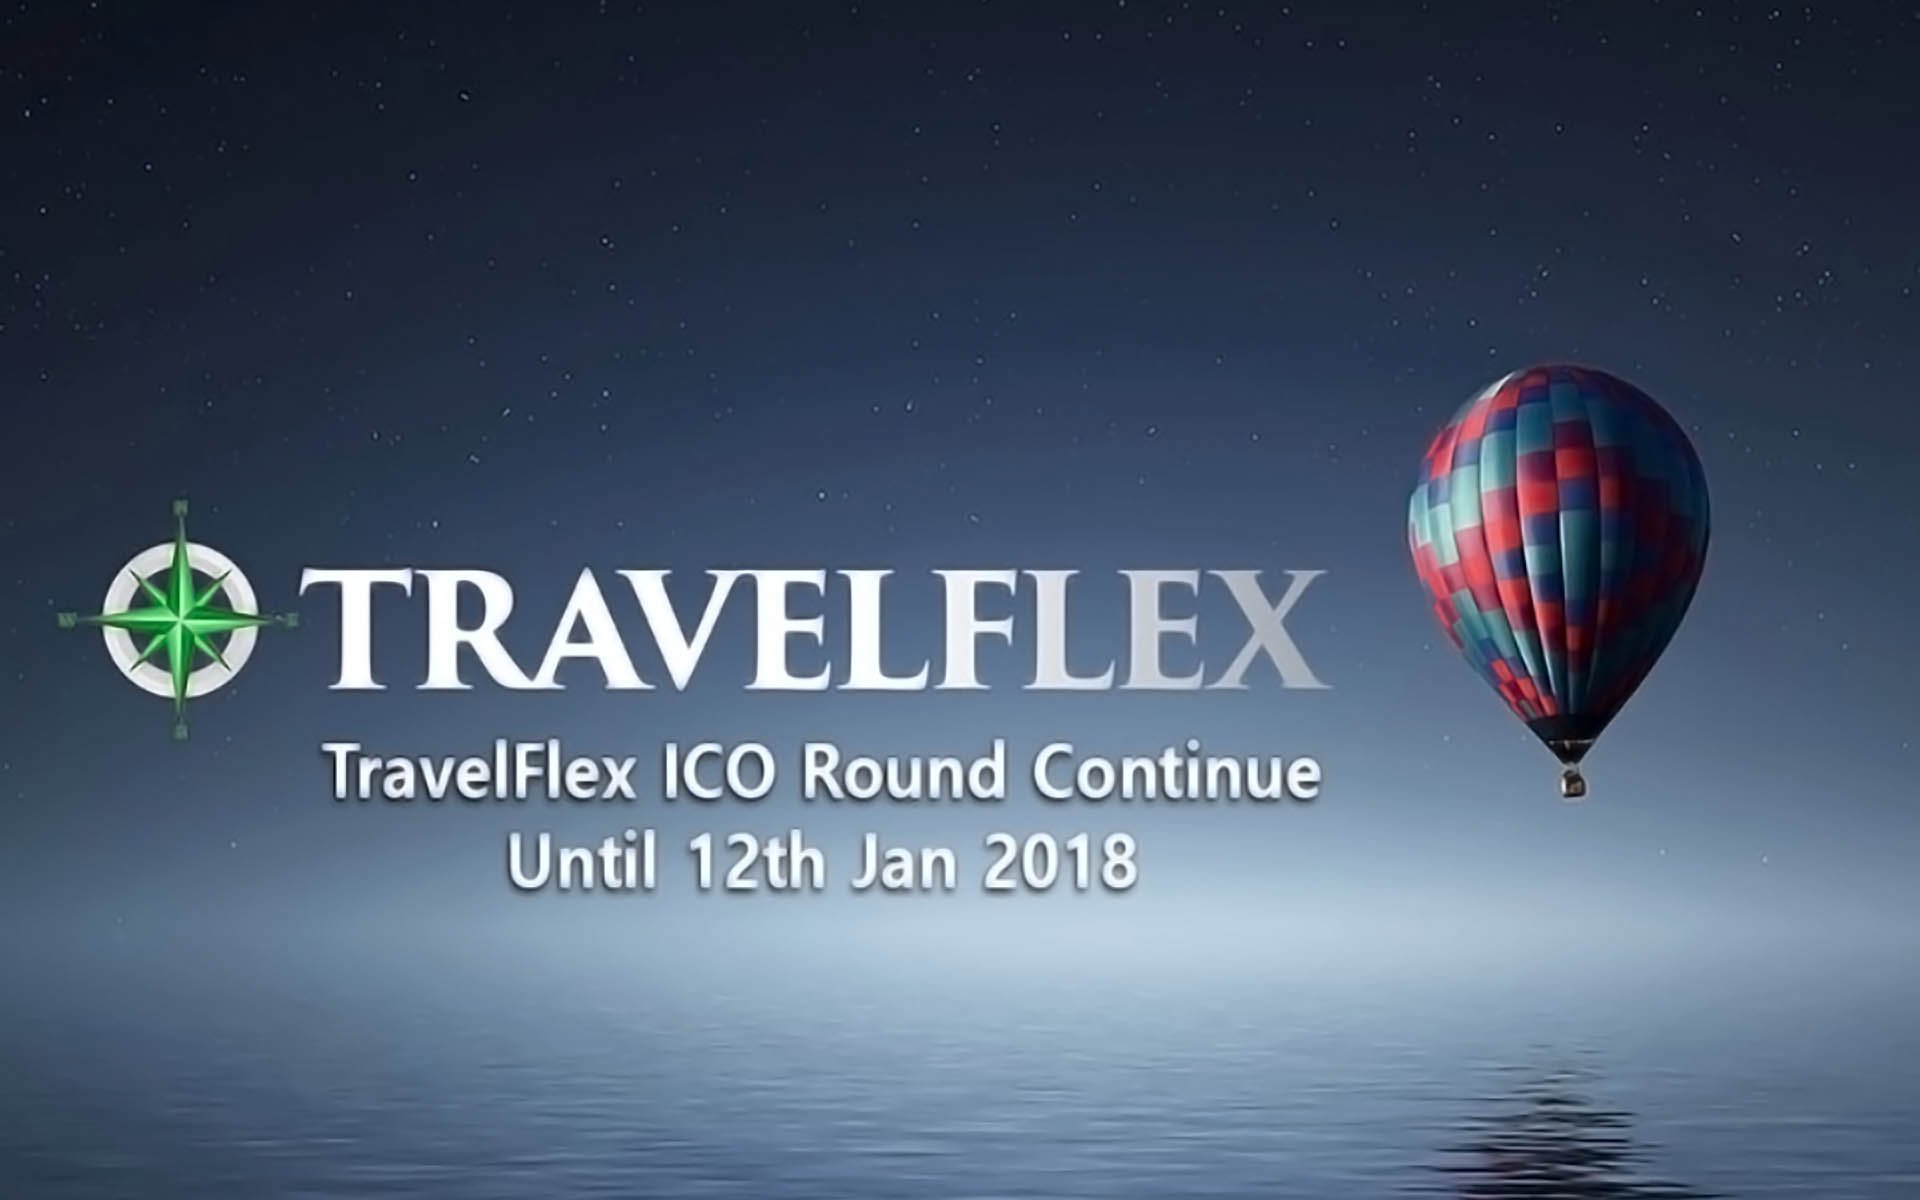 TravelFlex ICO Round Continue Until 12th Jan 2018